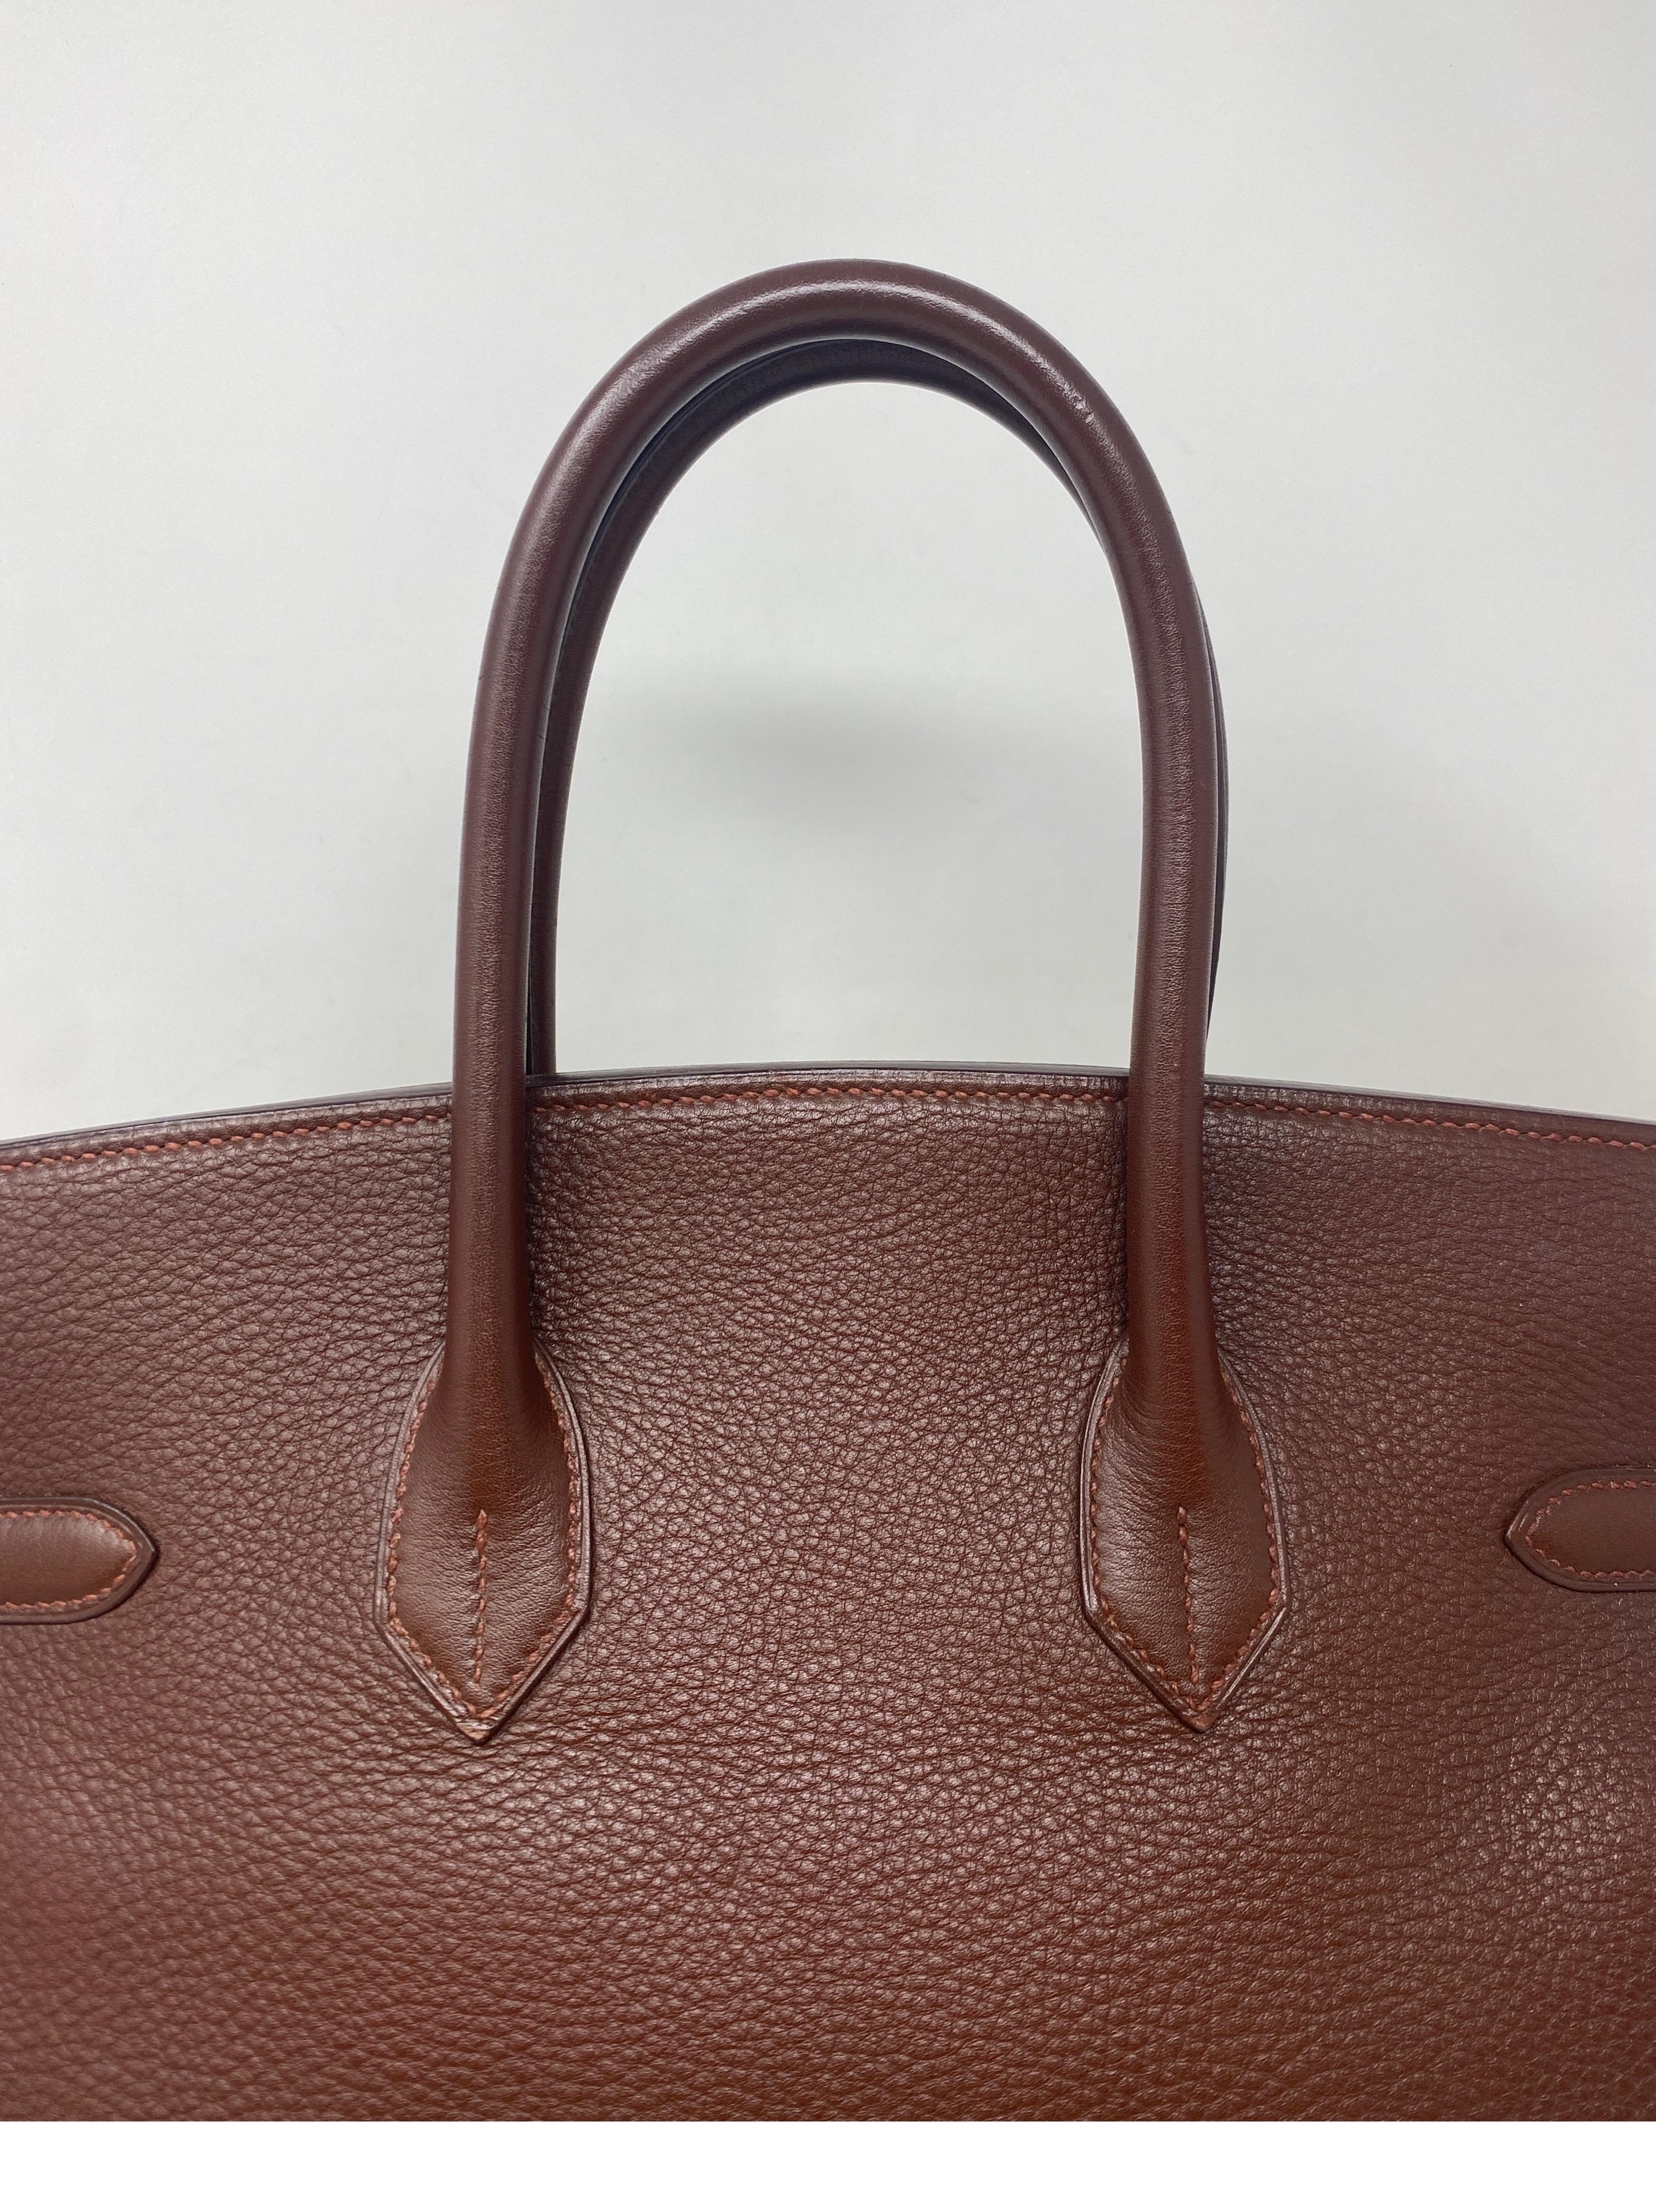 Women's or Men's Hermes Brown Birkin 35 Bag 